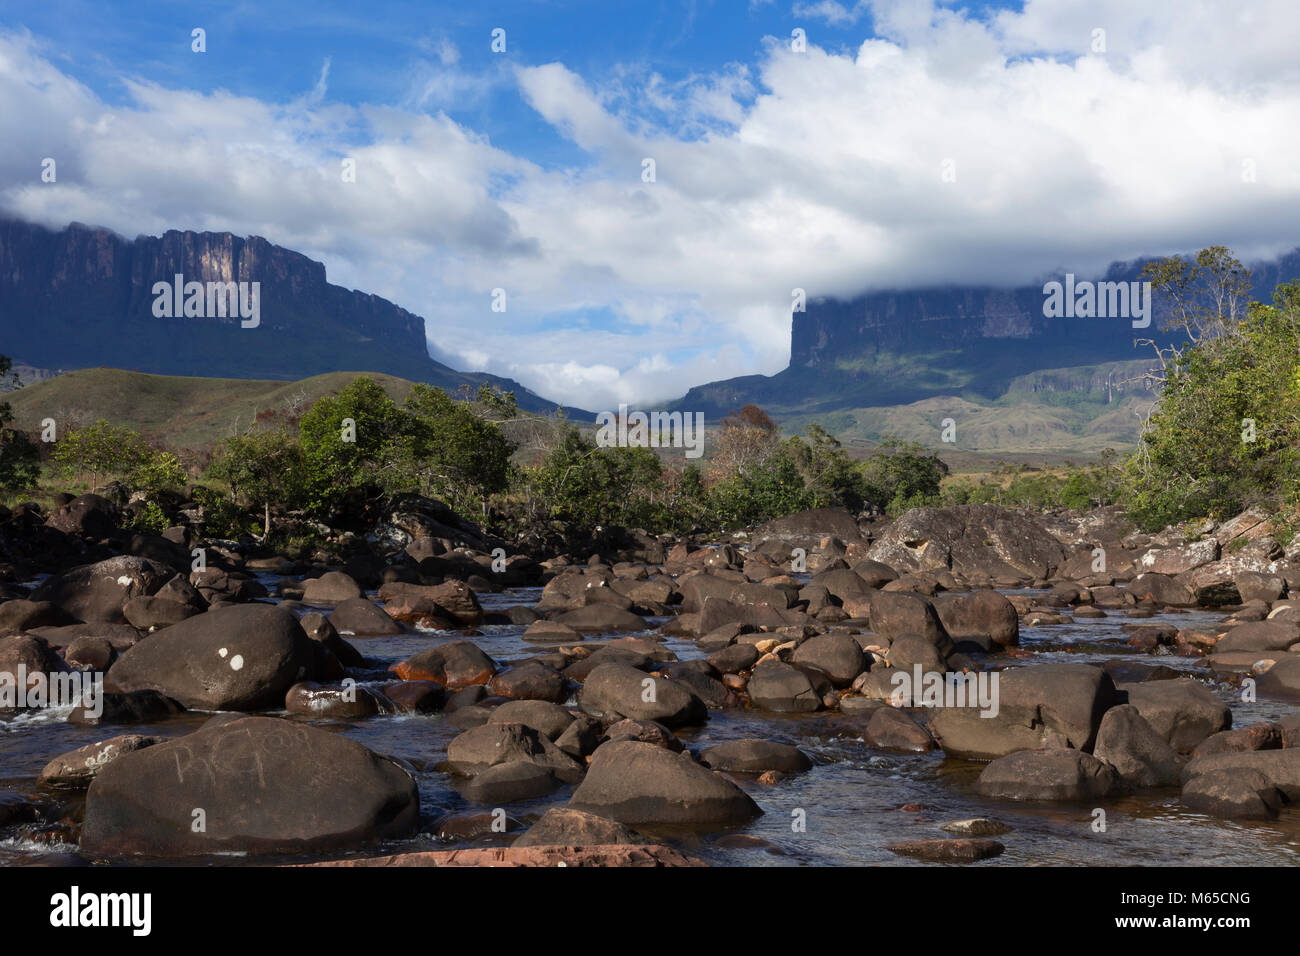 Mount Roraima and Kukenan Tepui in Venezuela, Canaima National Park. Stock Photo